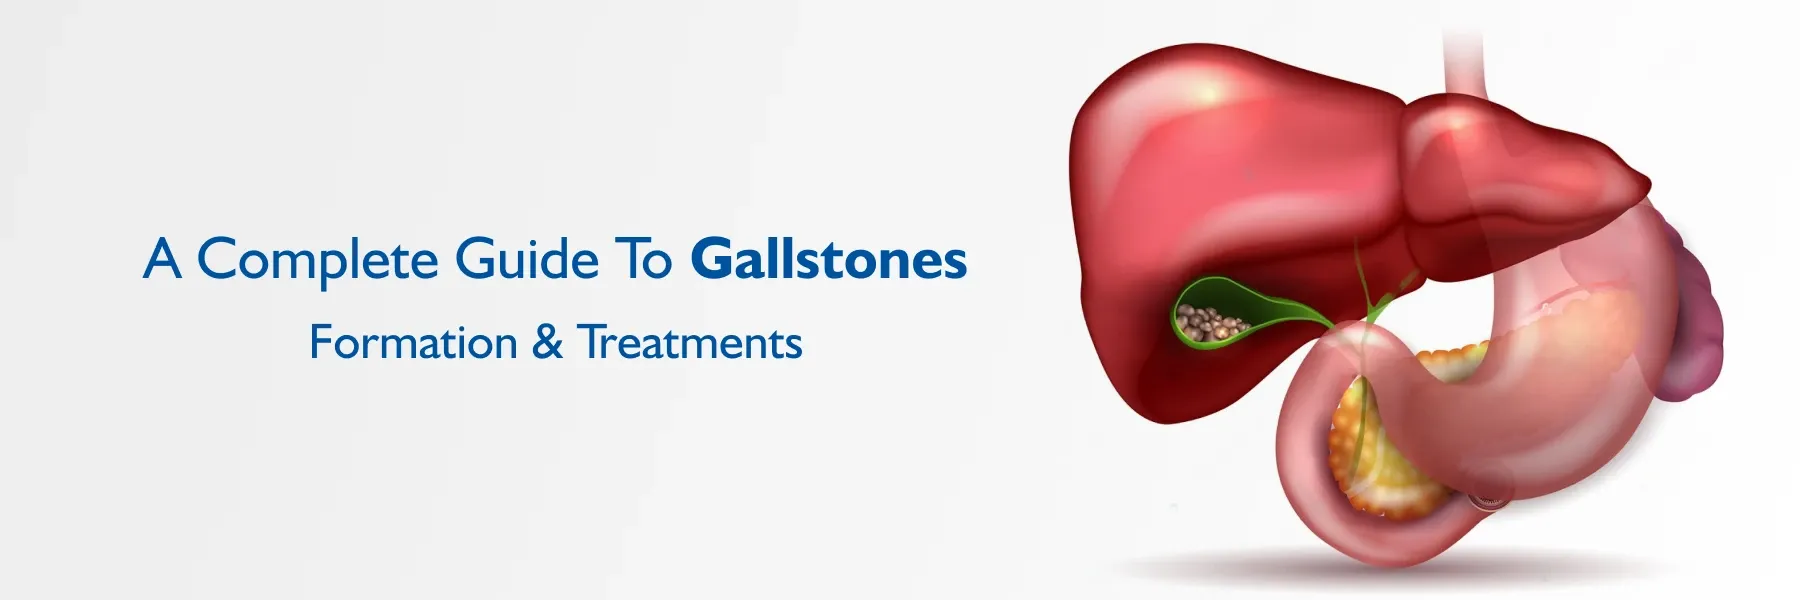 Gallstones निर्मिती आणि उपचार काय आहेत